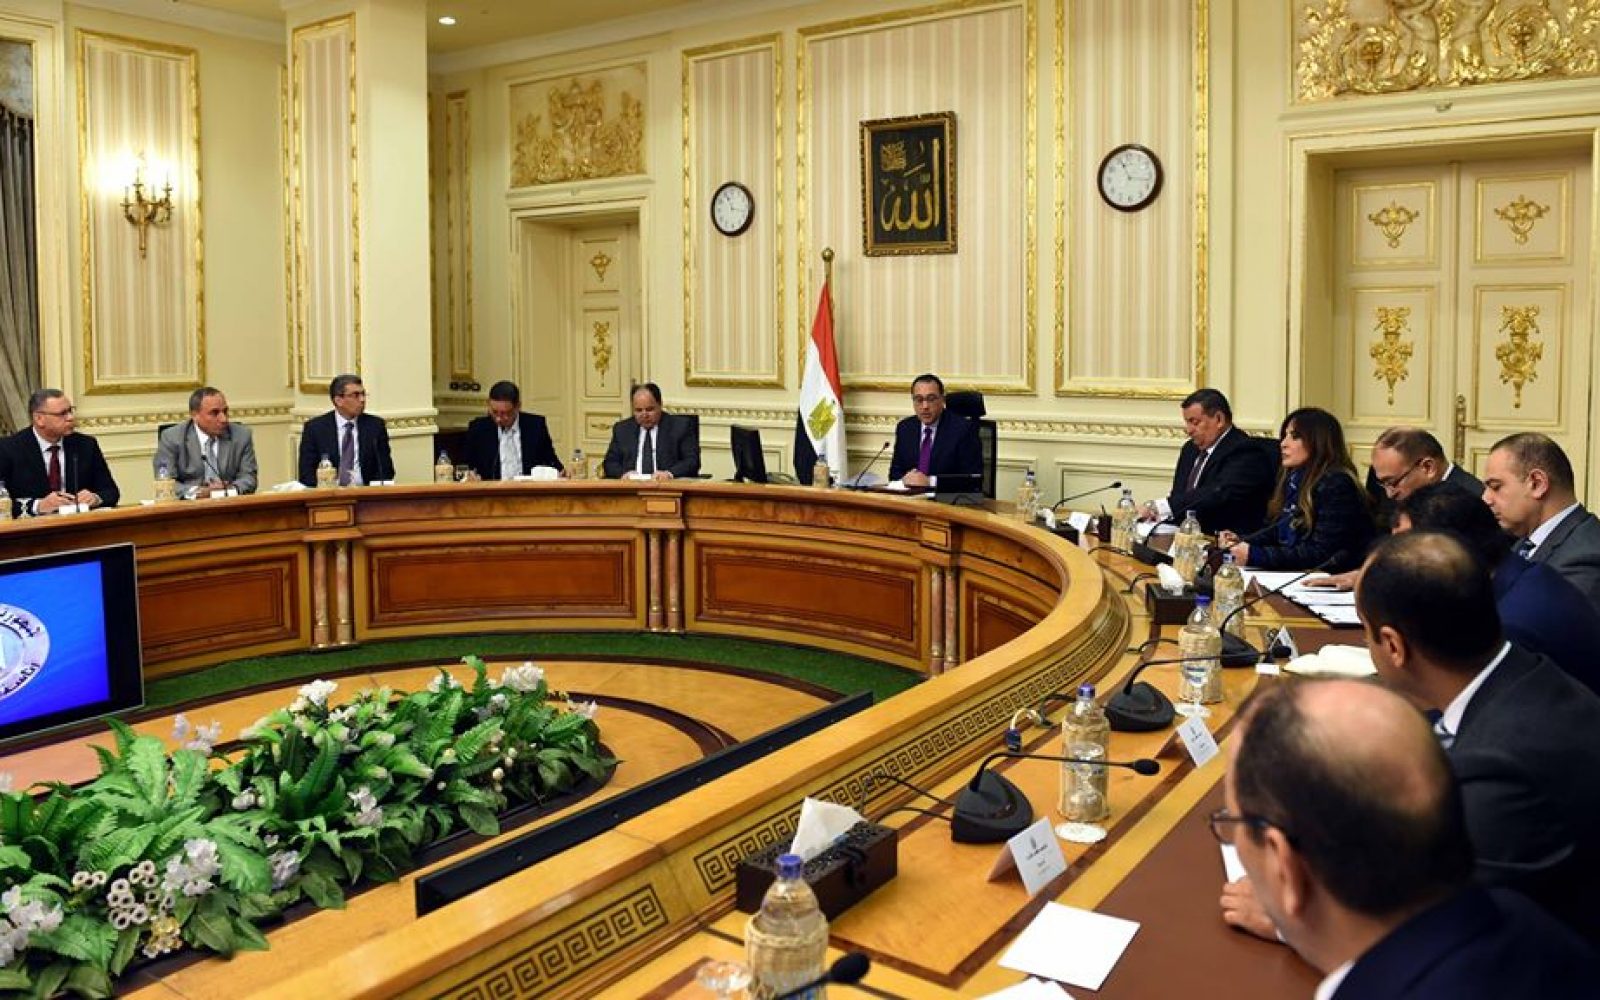 الحكومة المصرية تكشف عن الحالة التي ستتدخل فيها القوات المسلحة في أزمة كورونا